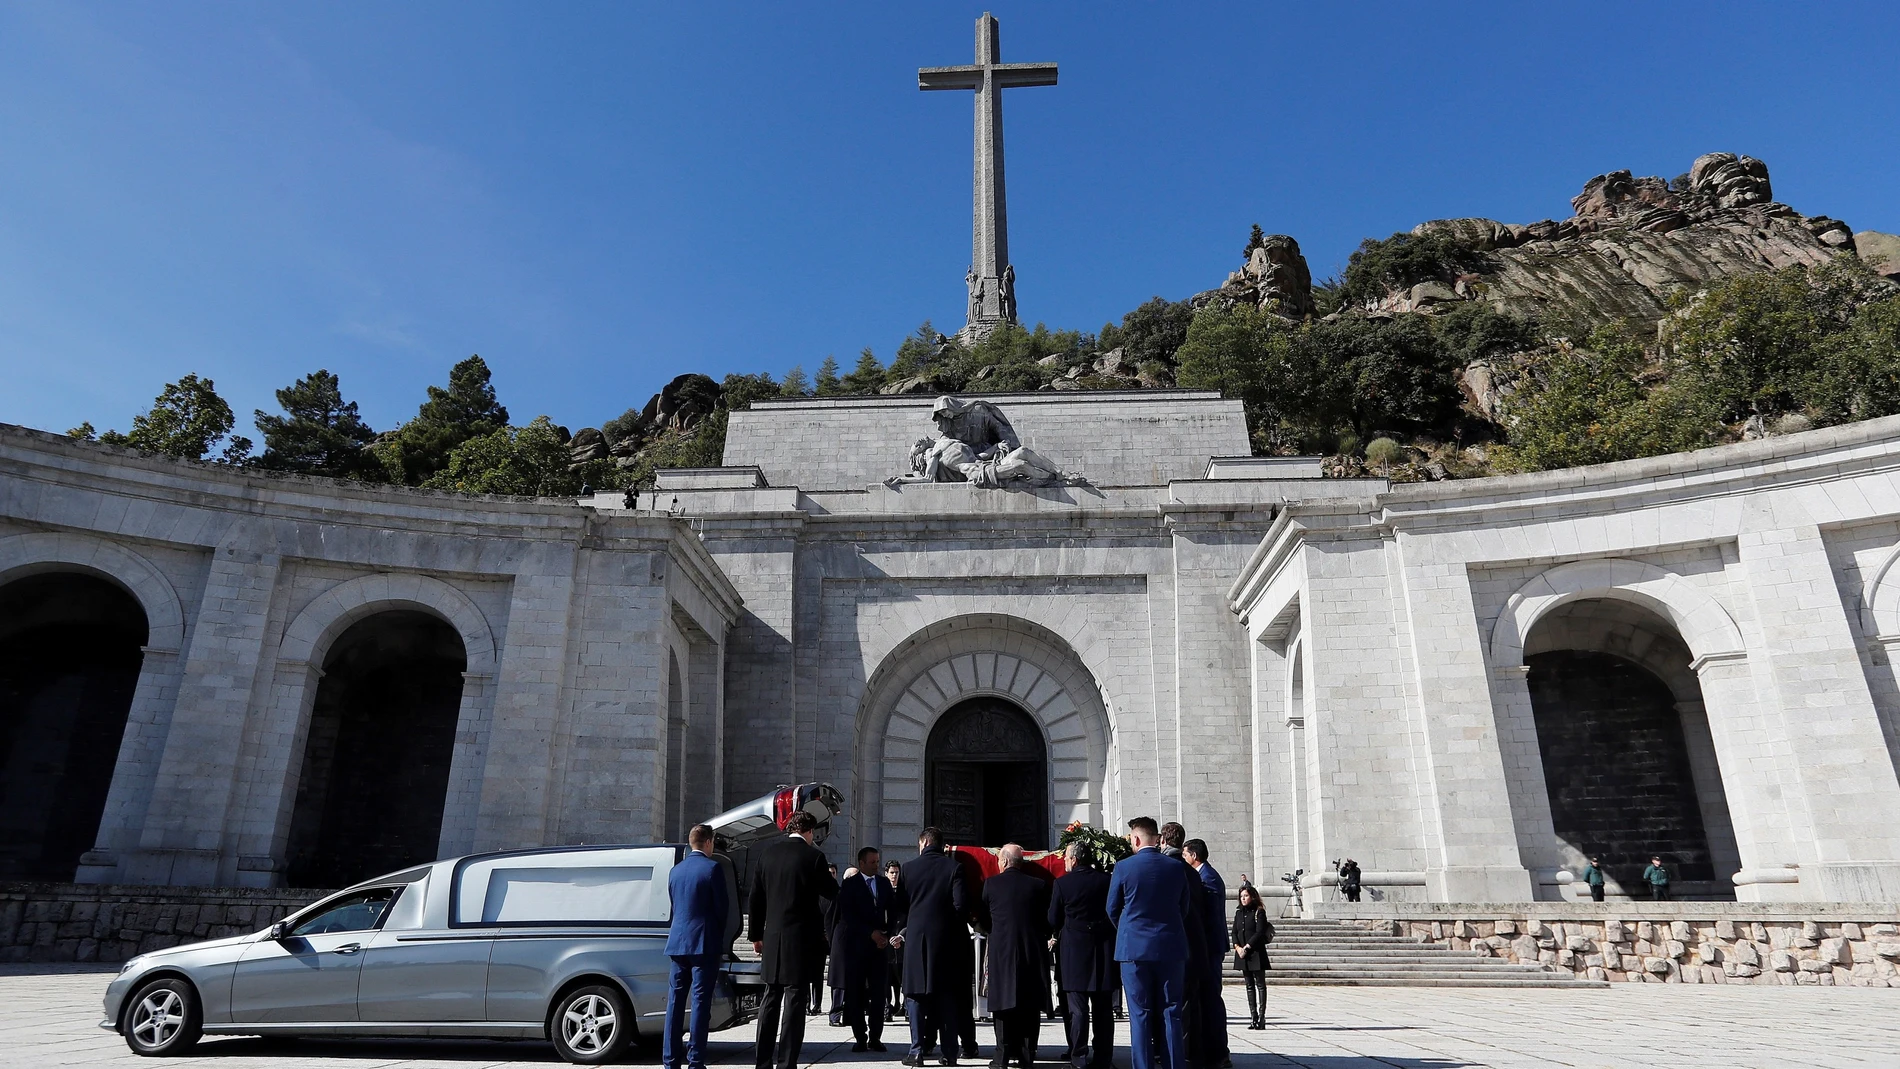 El féretro de Franco es introducido en el coche fúnebre tras su exhumación, el 24 de octubre de 2019